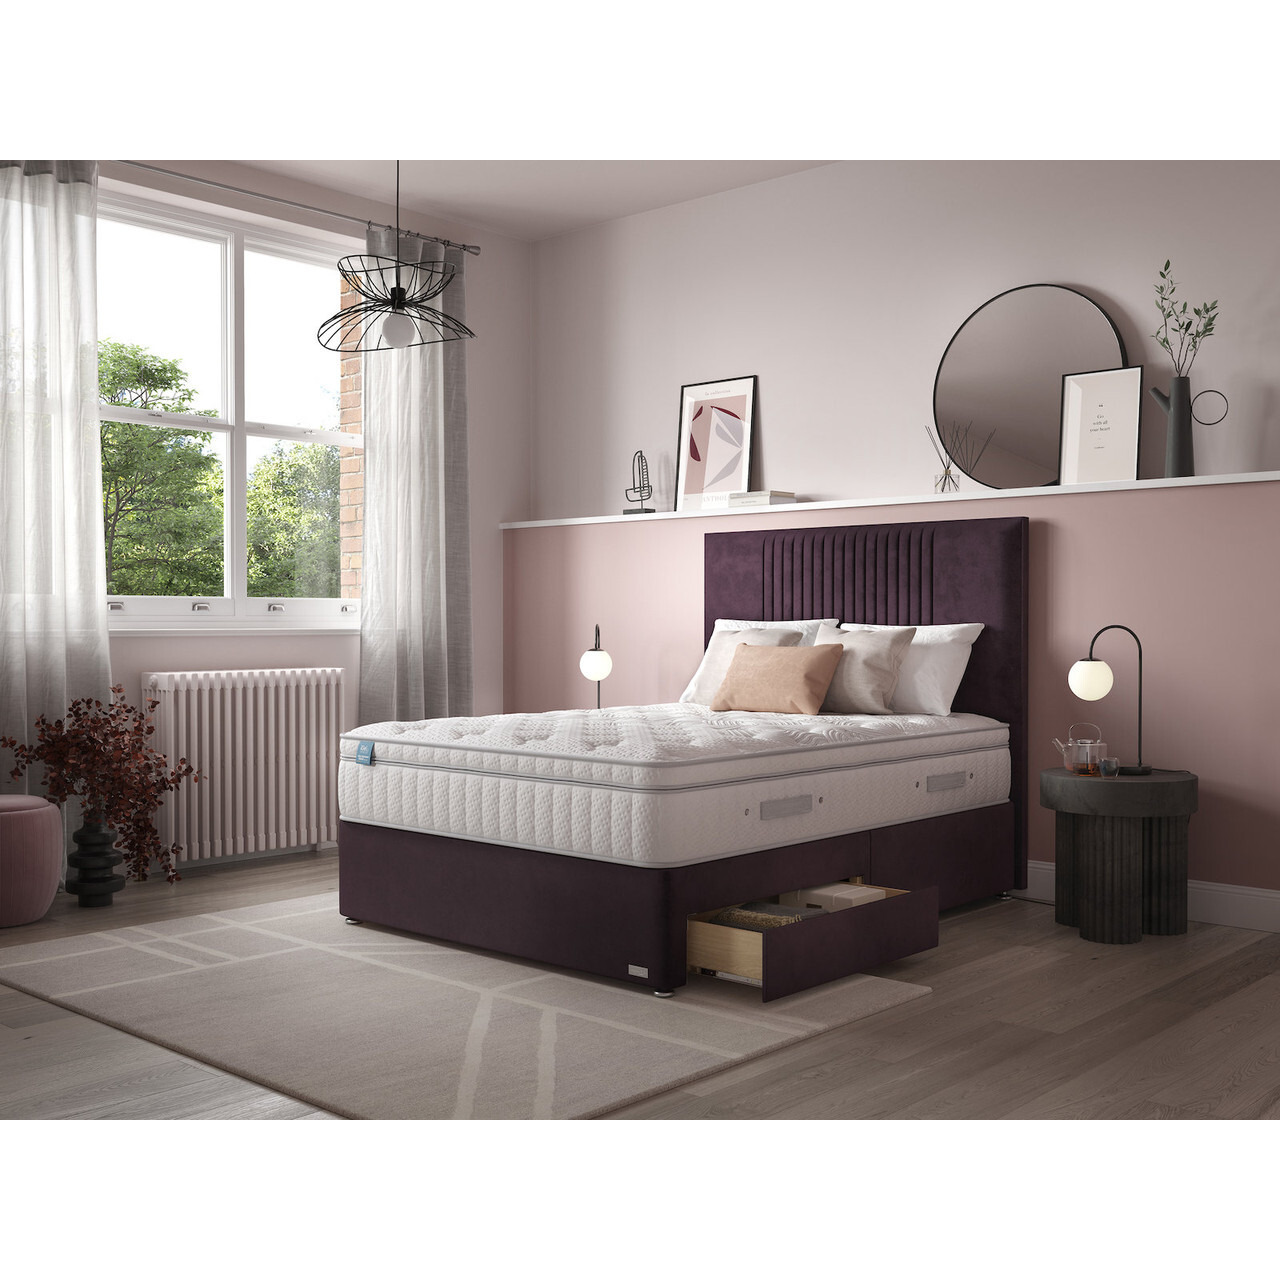 iGel Advance 3000i Plush Top Divan Bed Set On Castors - image 1